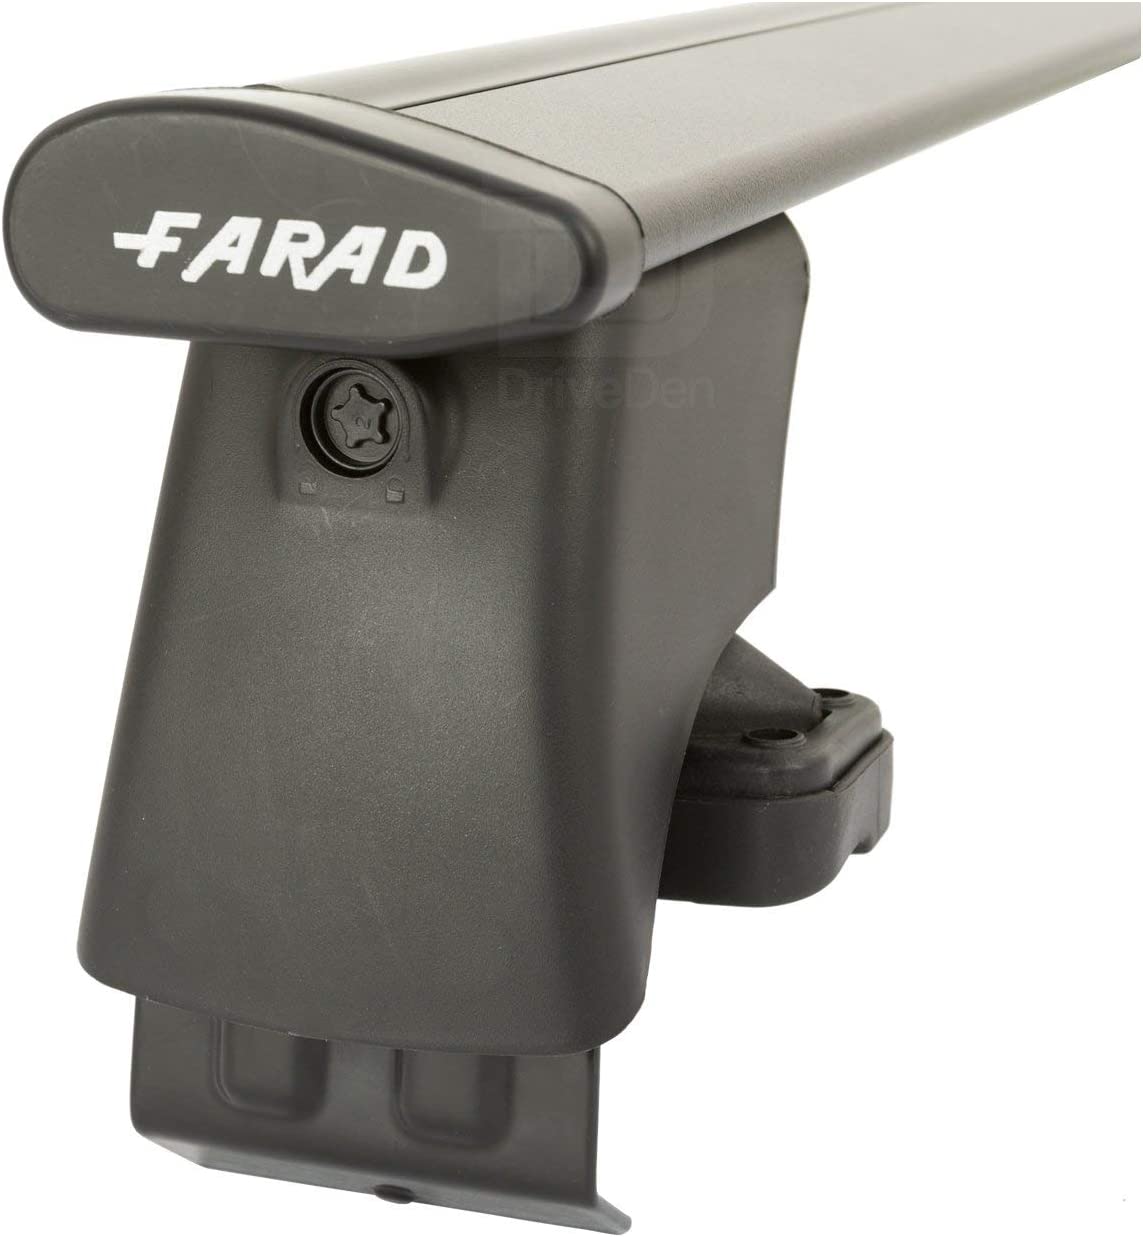 FARAD-Kit H2 per barre portatutto - Citroen Grand C4 Picasso 2006-2013 (senza corrimano)